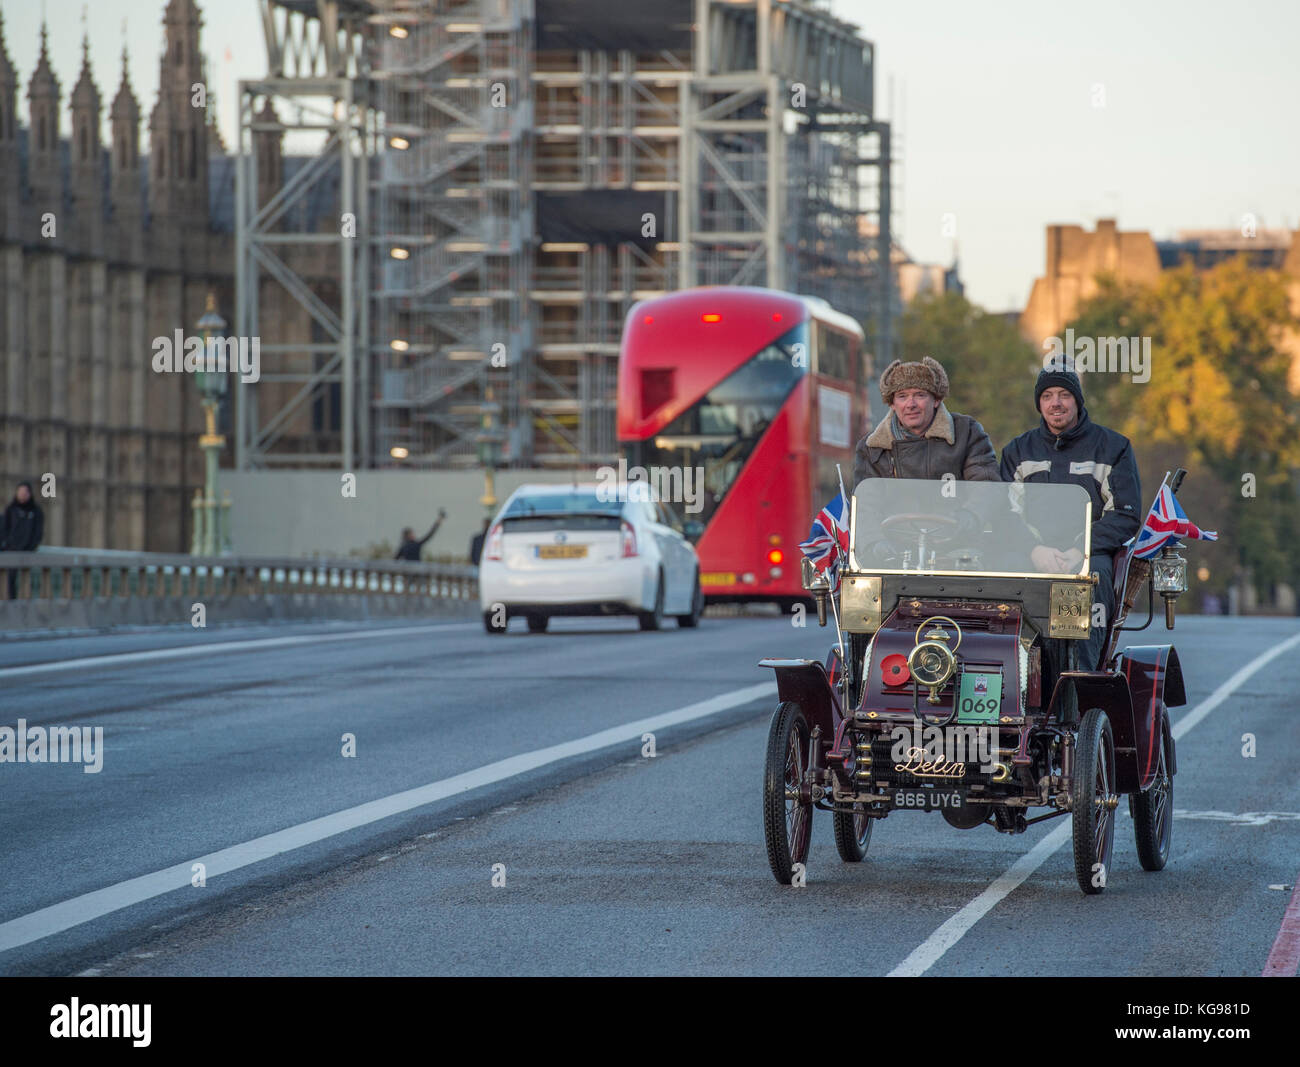 5 novembre 2017. Bonhams de Londres à Brighton, le plus long événement automobile au monde, 1901 Delin sur le pont de Westminster. Banque D'Images